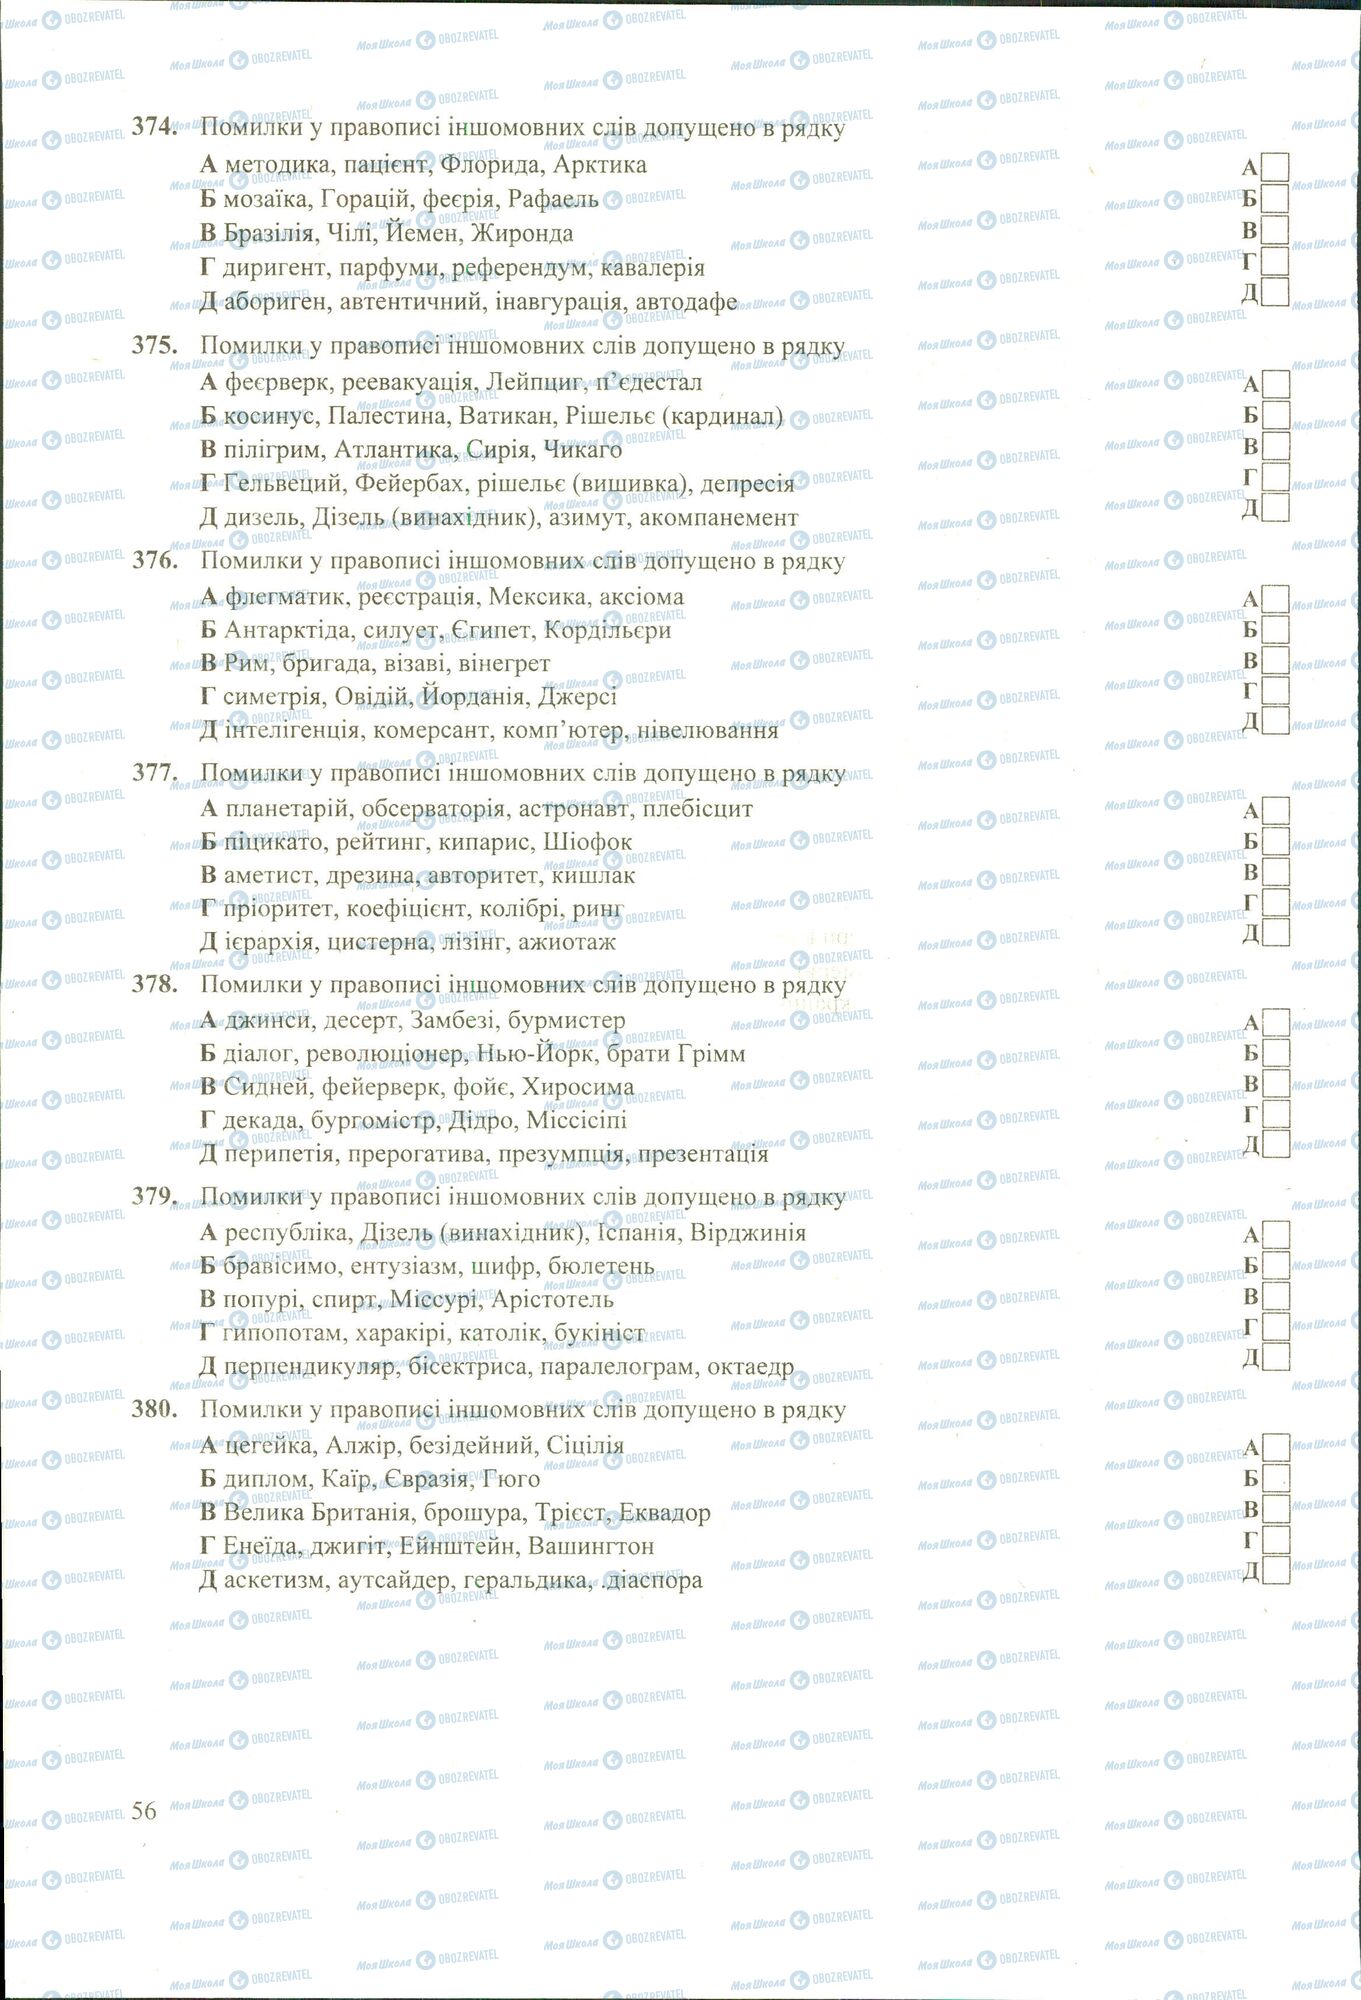 ЗНО Укр мова 11 класс страница 374-380